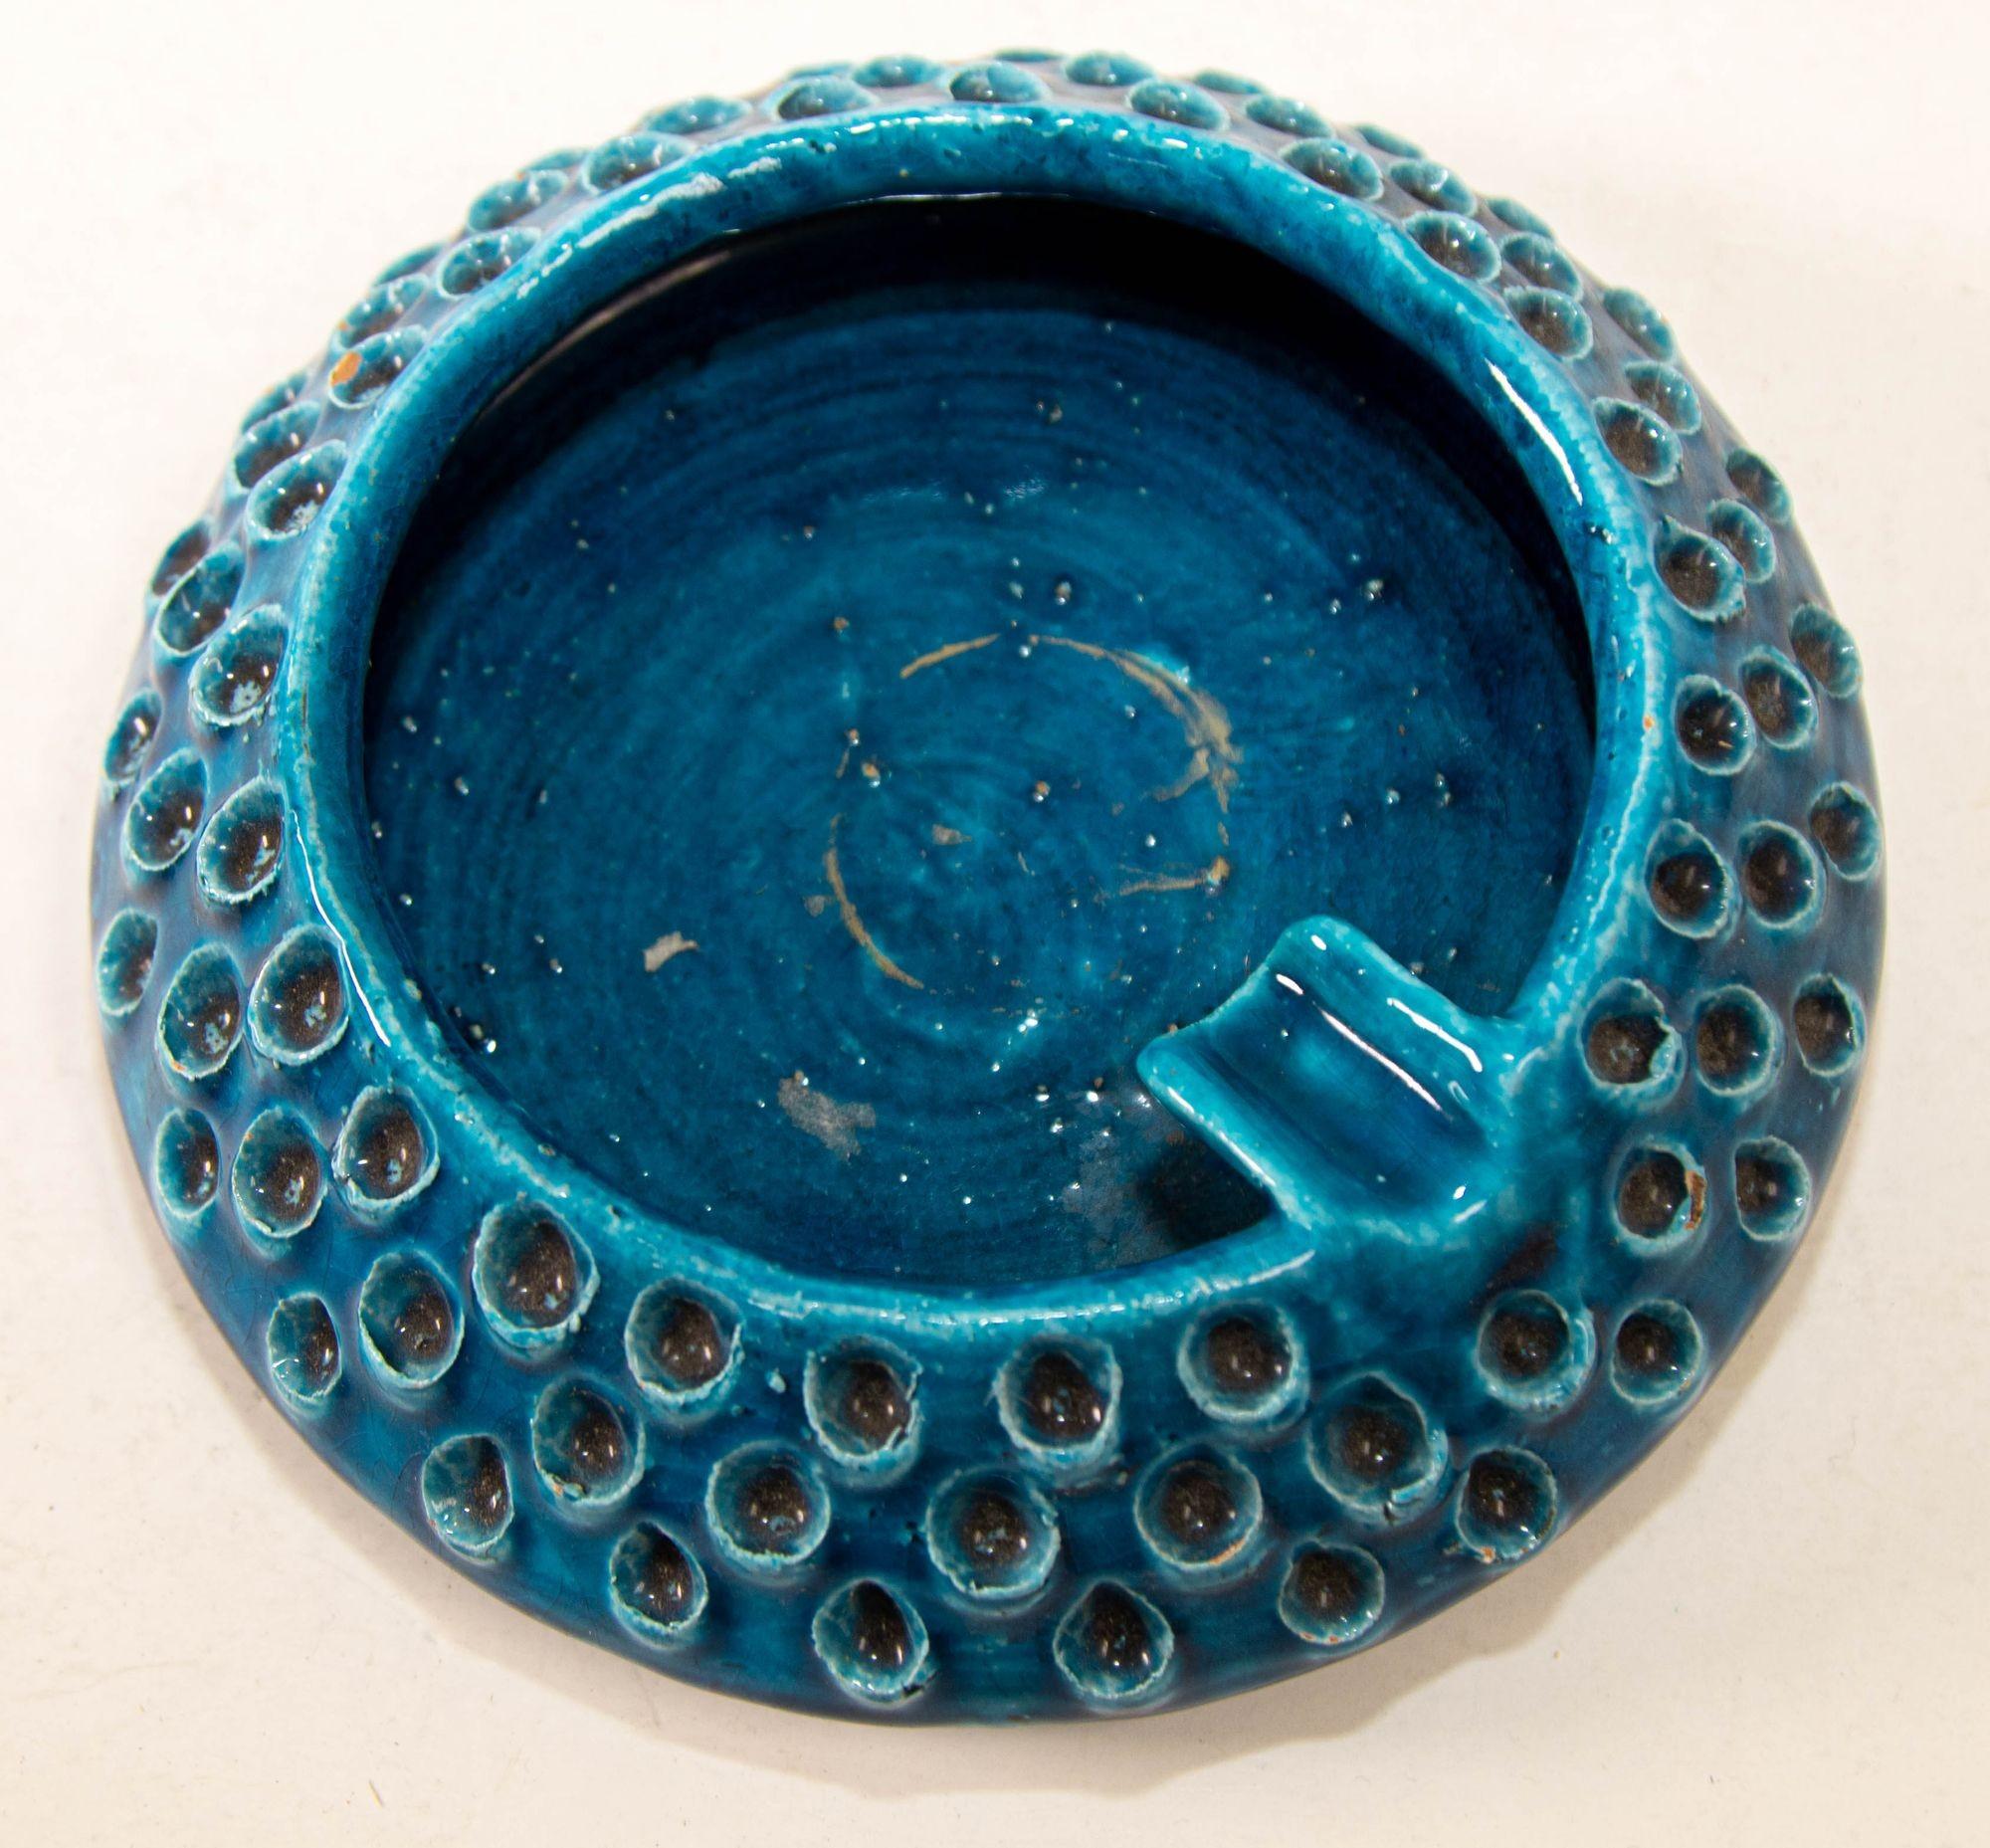 Aschenbecher aus blauer Keramik von Aldo Londi für Bitossi, handgefertigt in Italien
Türkisblauer Aschenbecher 